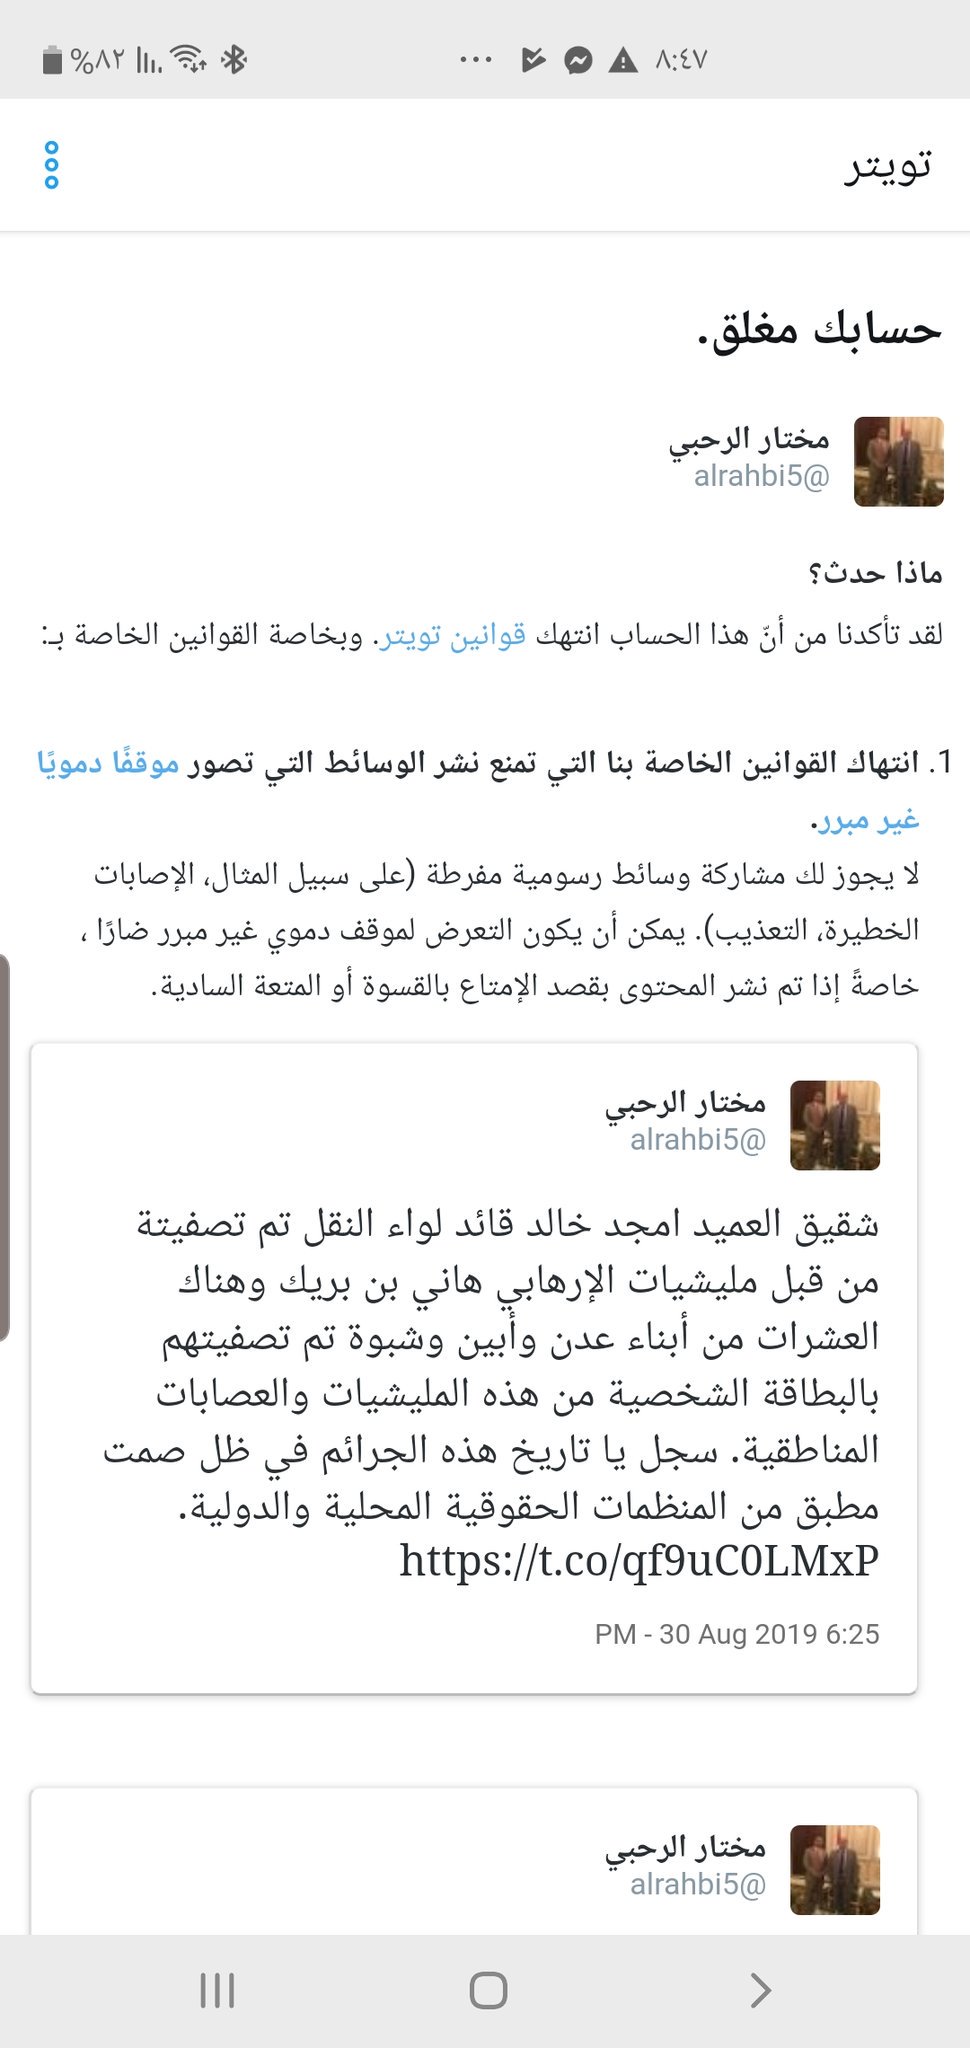 الرحبي تويتر مختار سجال يمني